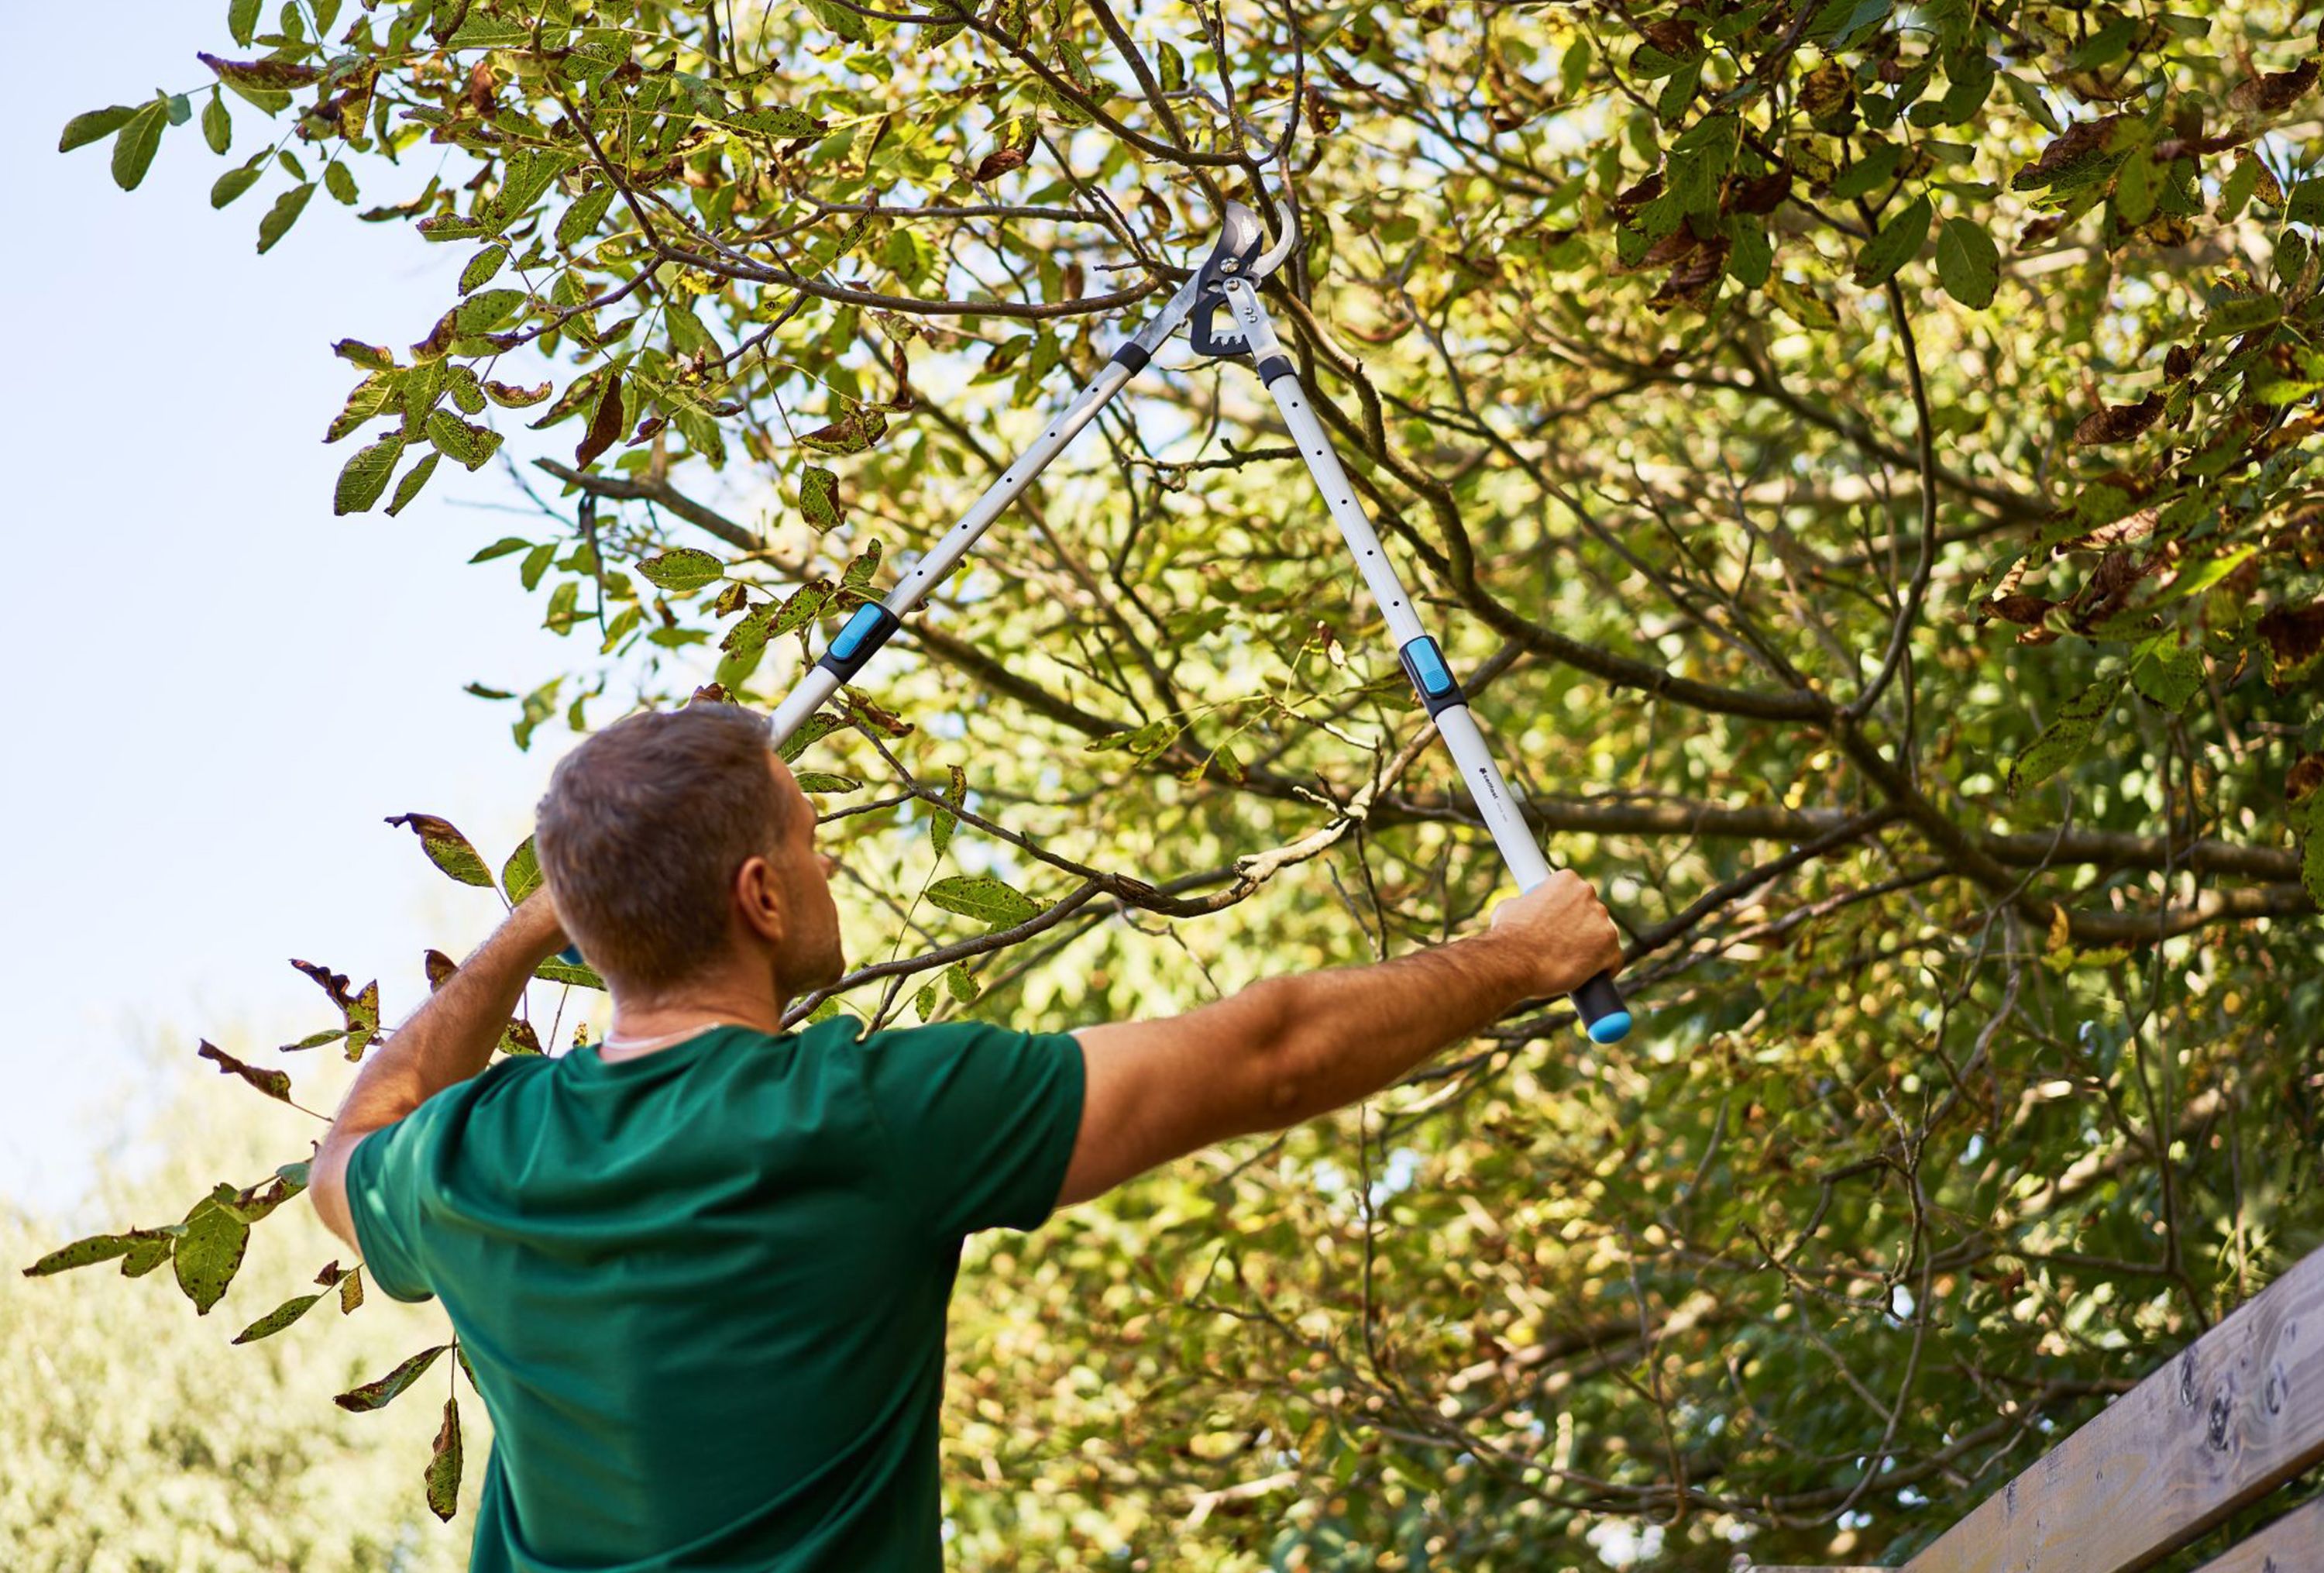 Wrzesień w przydomowym ogrodzie – poznaj listę prac, które warto wykonać